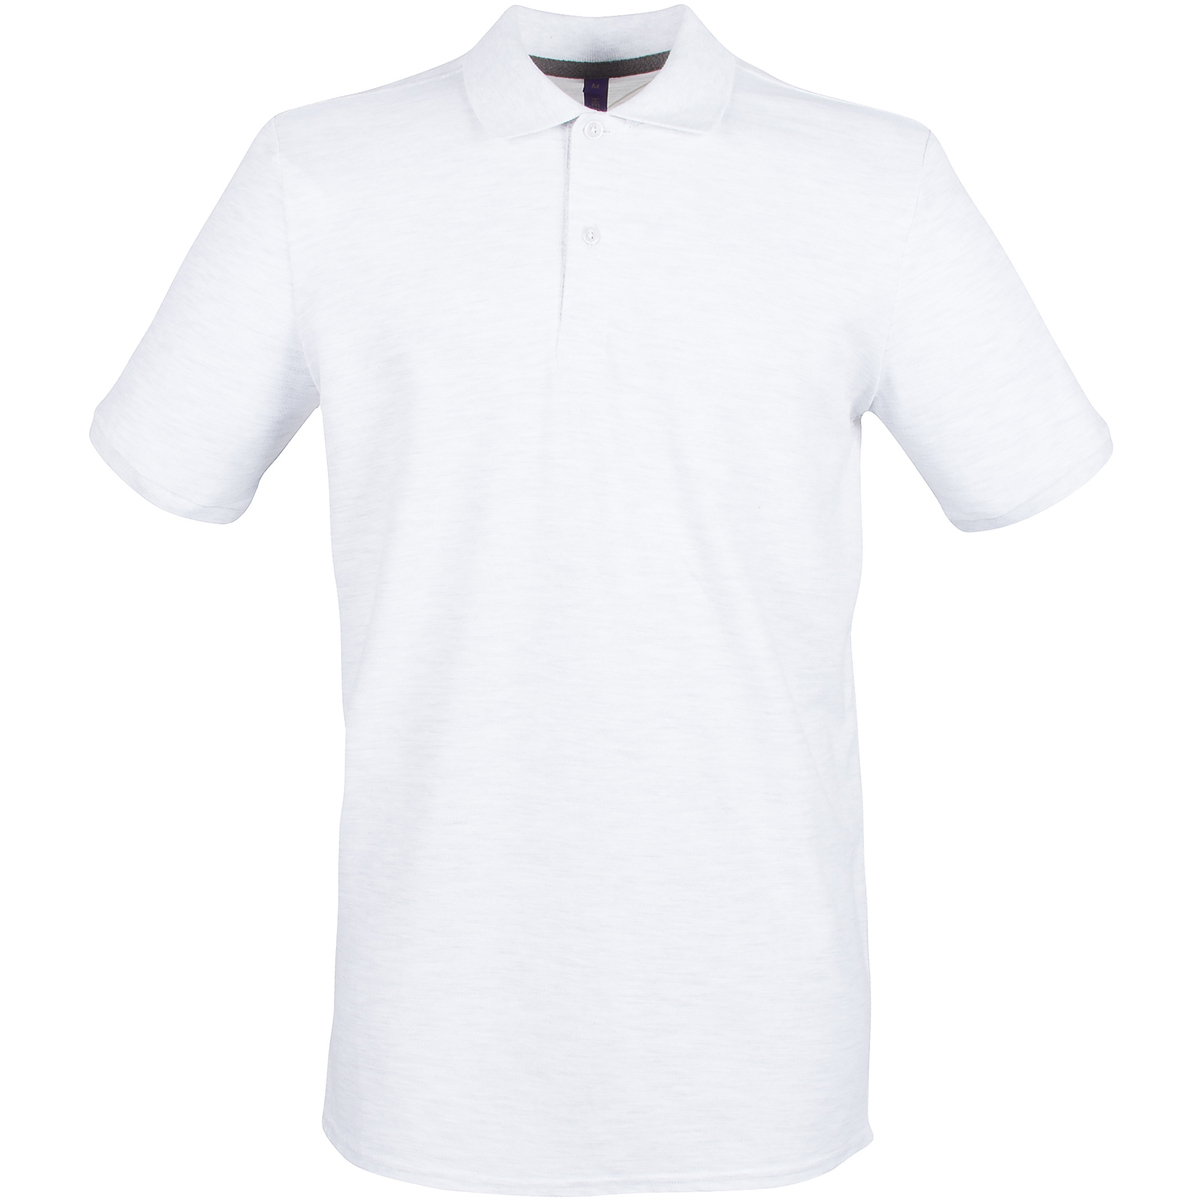 textil Hombre Tops y Camisetas Henbury HB101 Blanco